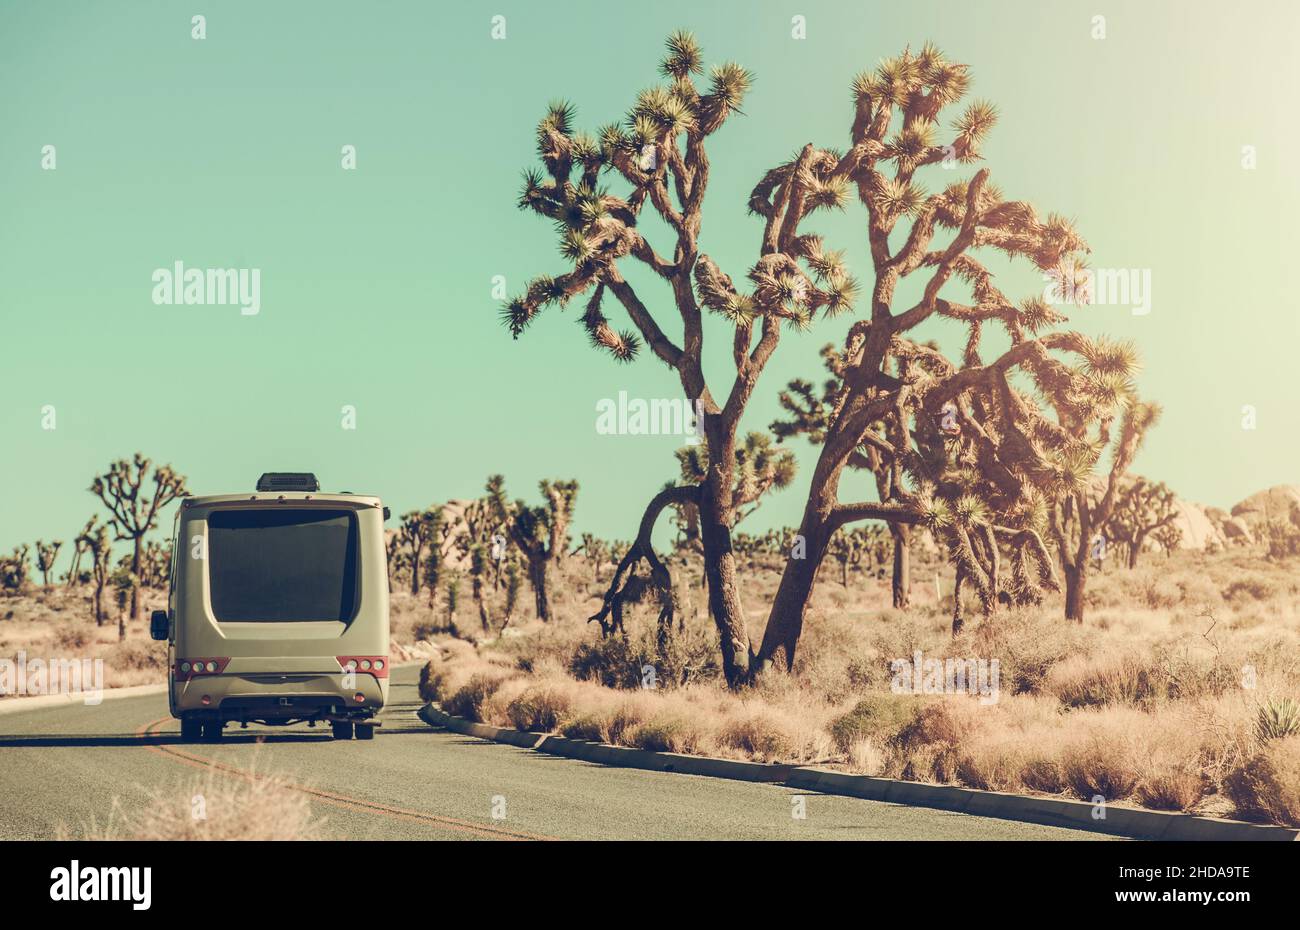 Touristes voyageant dans leur véhicule récréatif de classe C à travers le parc national pittoresque de Joshua Tree en Californie du Sud.Thème fourgonnette camping-car Van Life. Banque D'Images